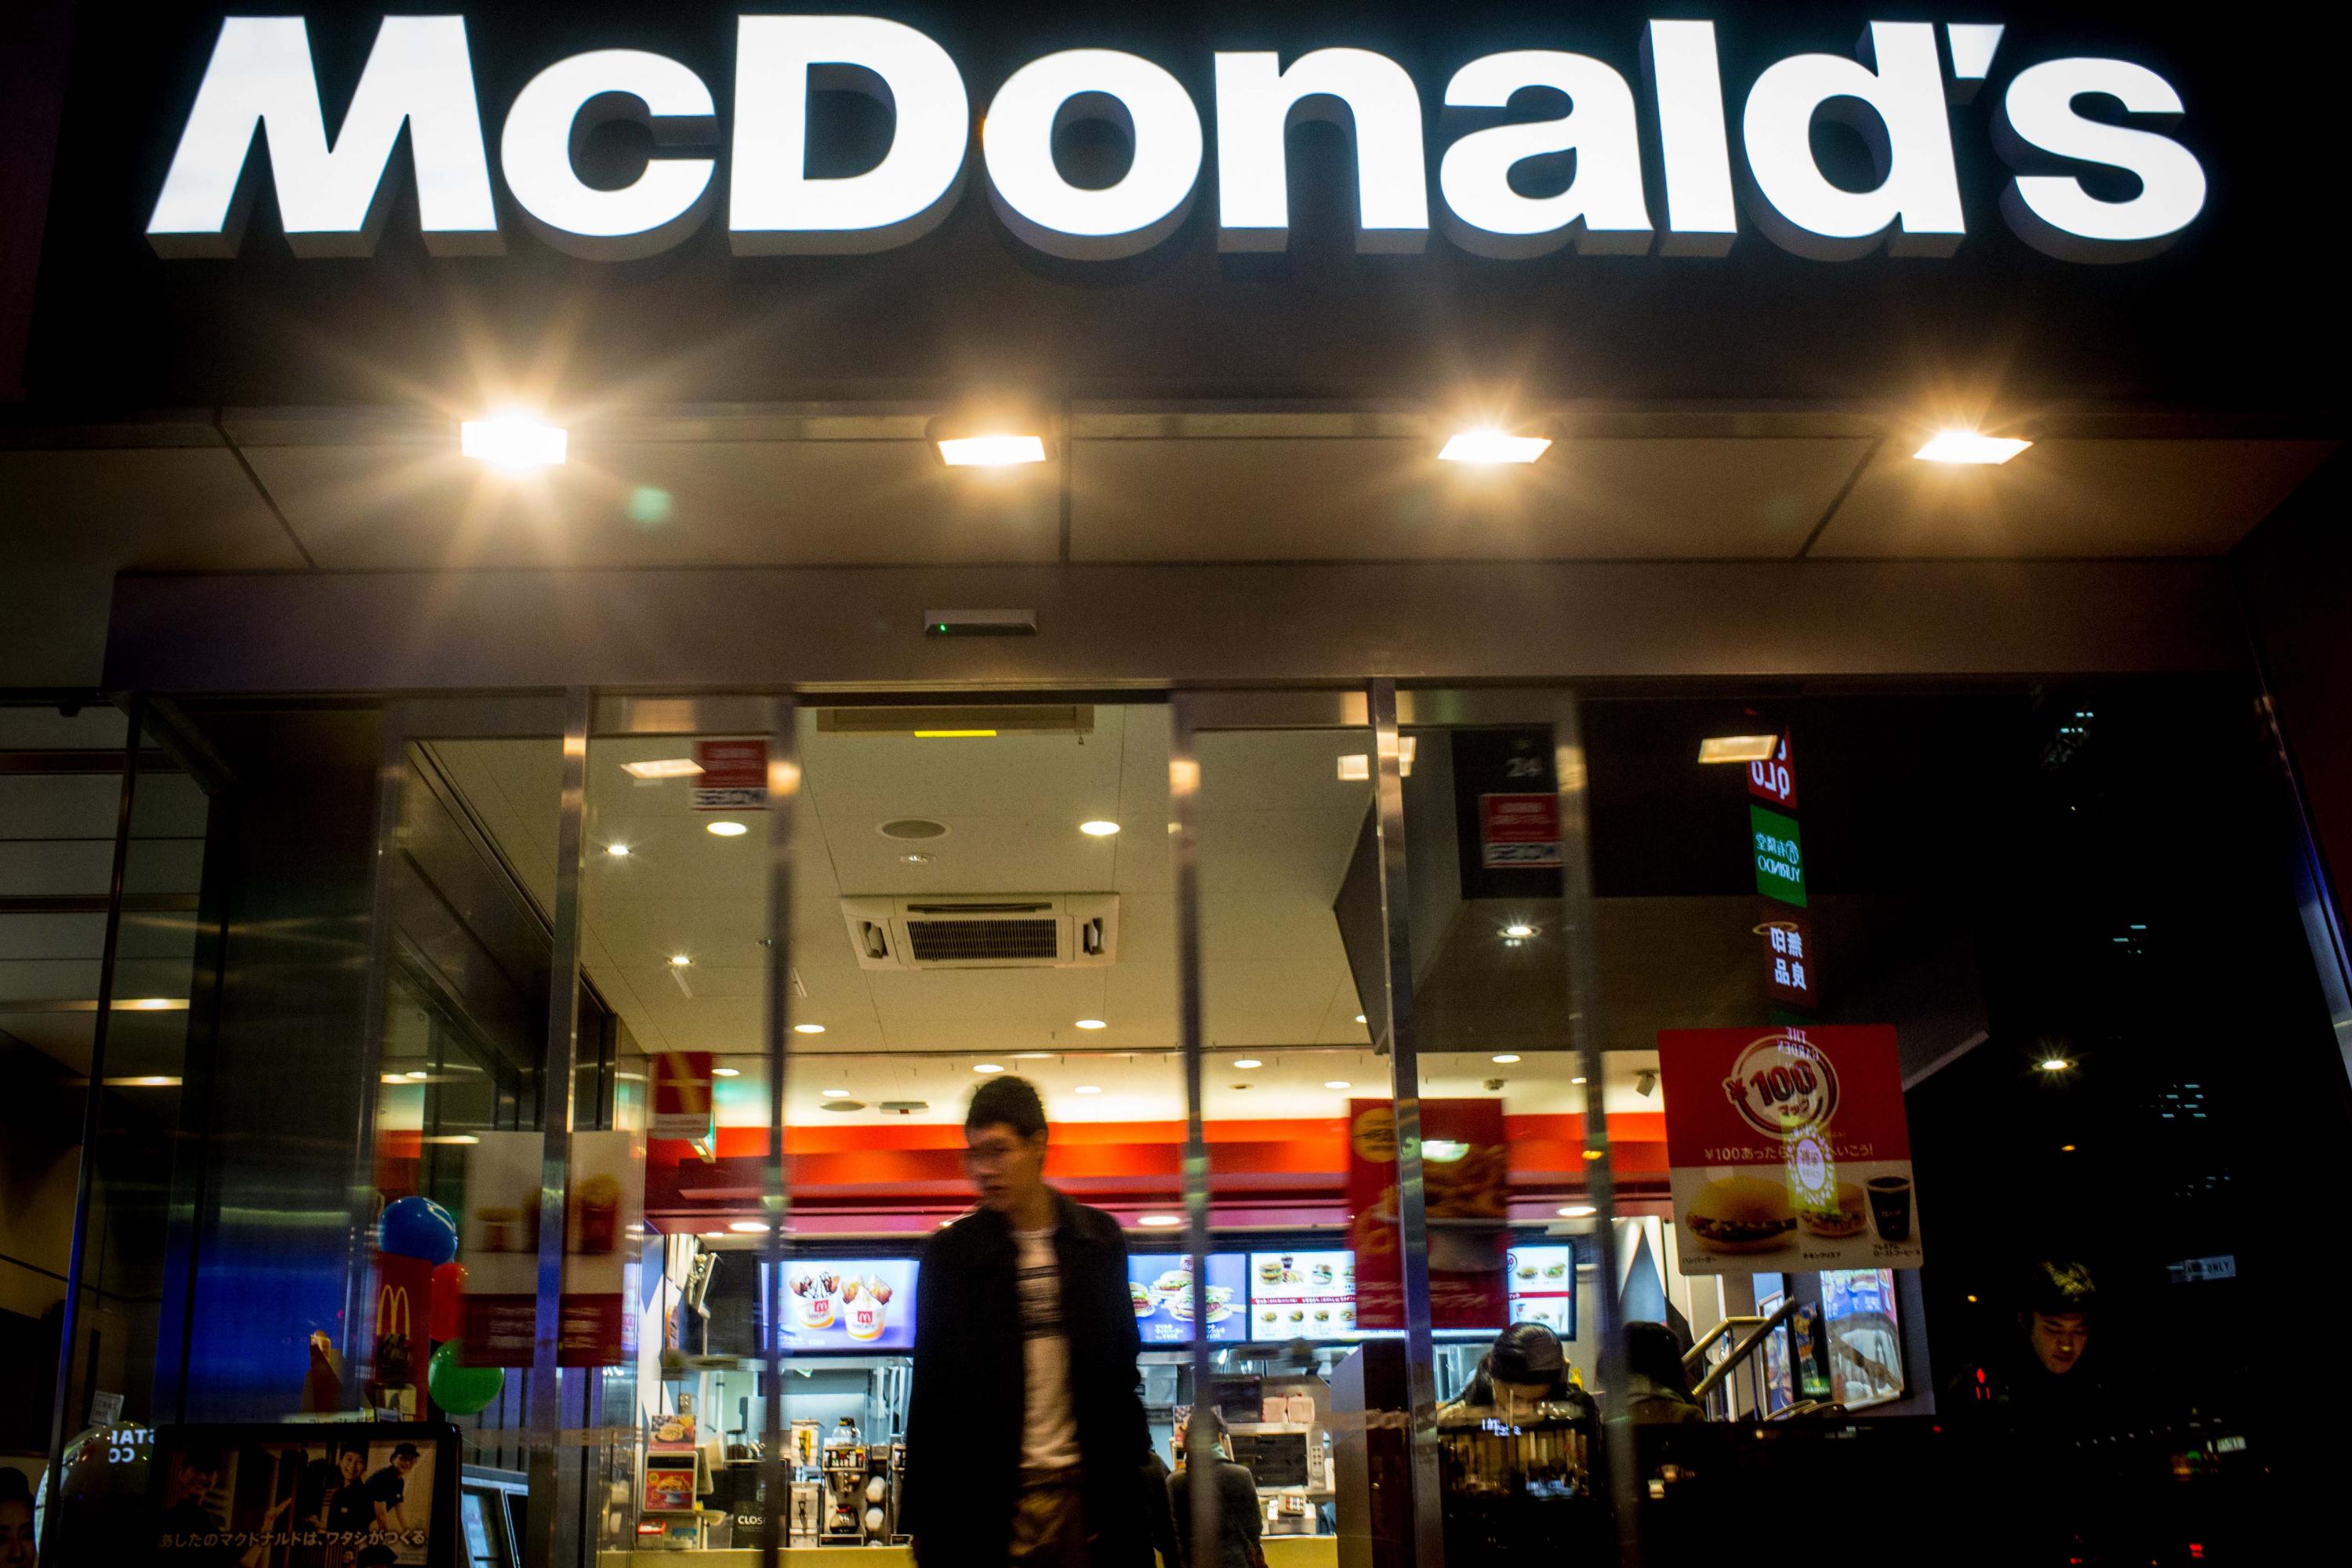 McDonald’s
Número estimado de franquicias: 36.900
Cuota inicial: $45.000  por un restaurante tradicional
Inversión inicial estimada: $989.000-$2.2 millones 
Cuota de servicio: 4% de las ventas netas
Cuota por publicidad: No menos del 4% de las ventas netas
(Foto: Getty)